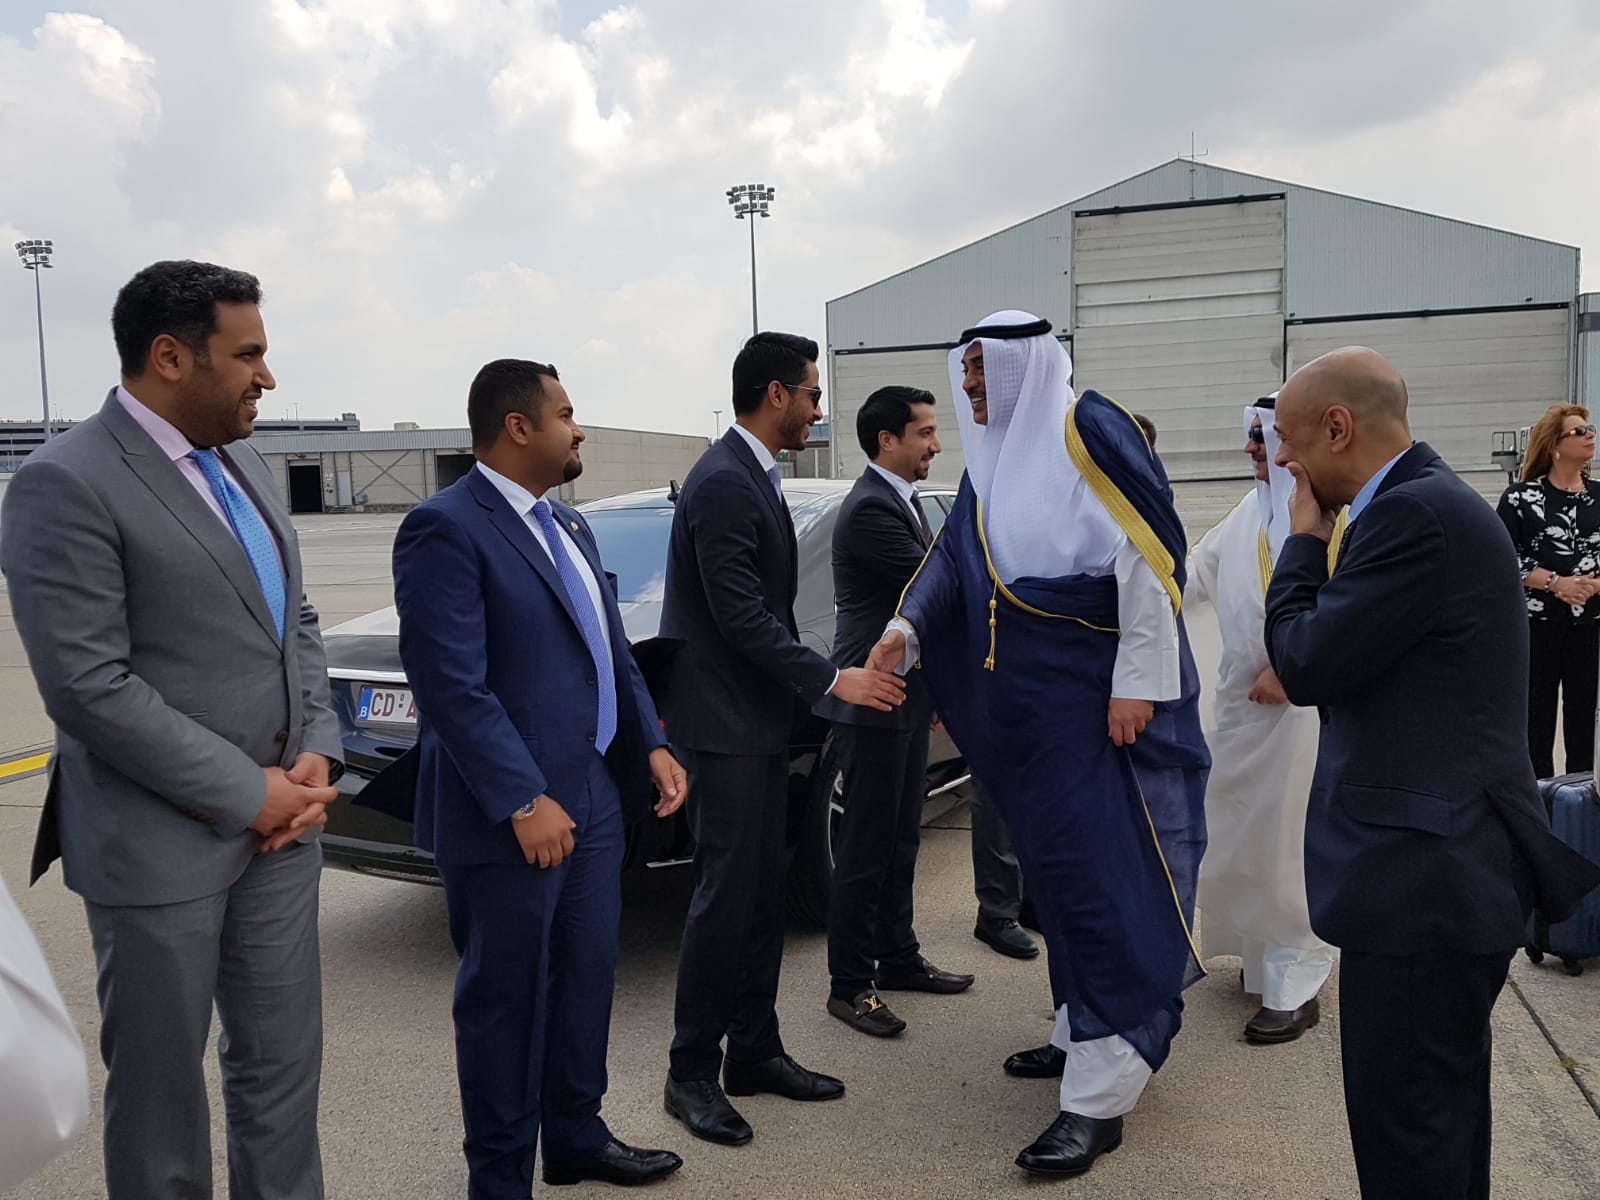 الشيخ صباح الخالد الحمد الصباح نائب رئيس مجلس الوزراء وزير الخارجية يصل الى بروكسل